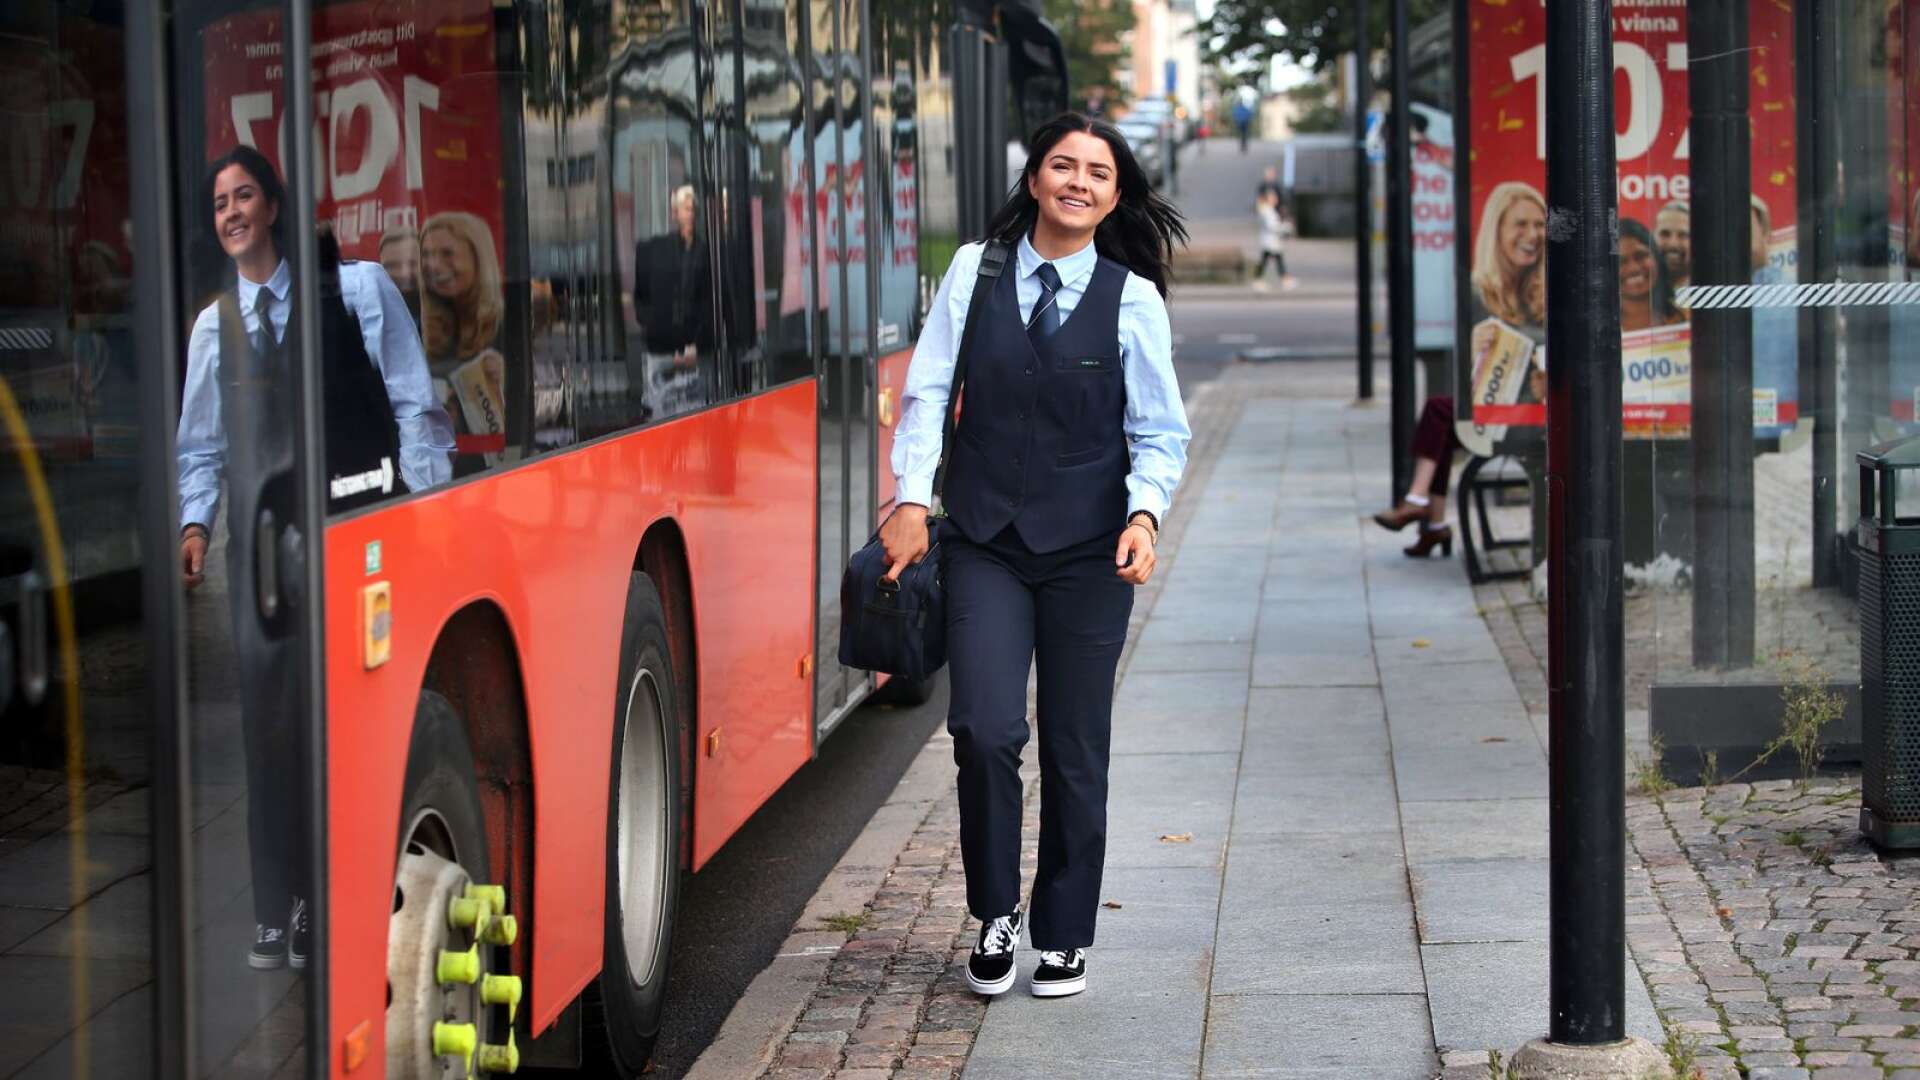 21-åriga Seline Piper är en av Värmlands yngsta busschaufförer. Behovet av unga i branschen är väldigt stort på grund av alla pensionsavgångar.